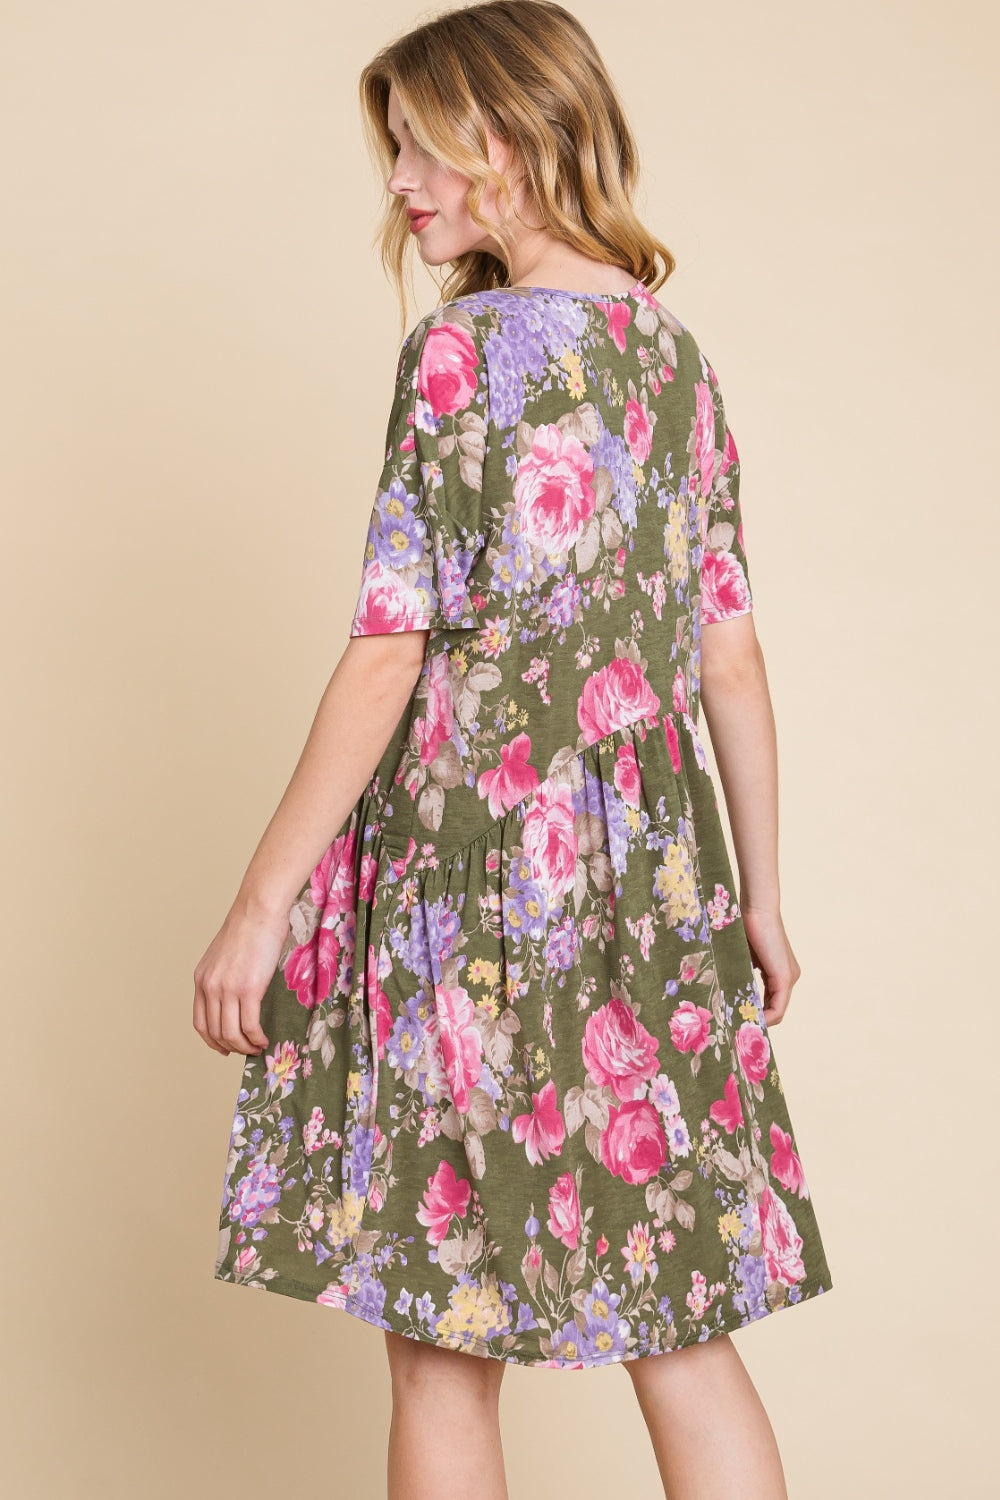 Suzette Flower Print V-Neck Ruched Dress